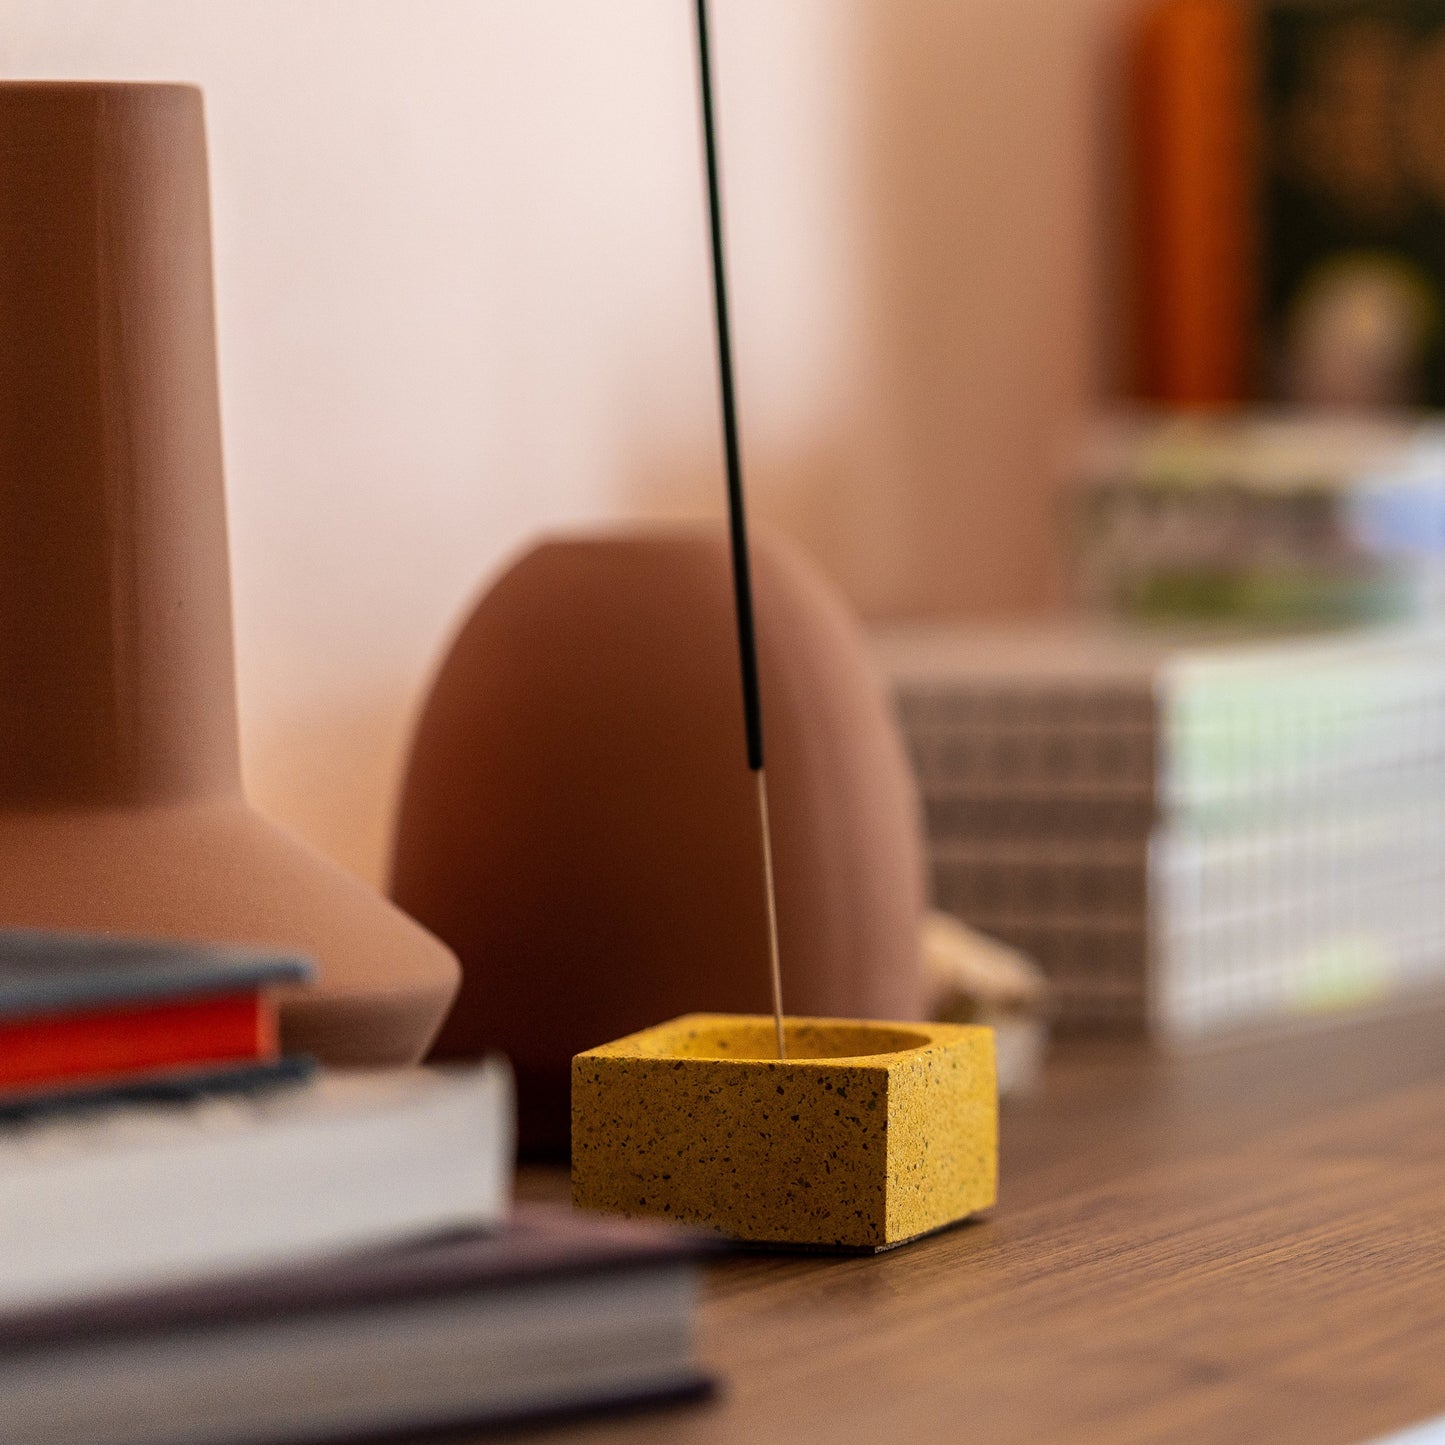 Square concrete terrazzo incense holder in marigold on desk with incense stick.